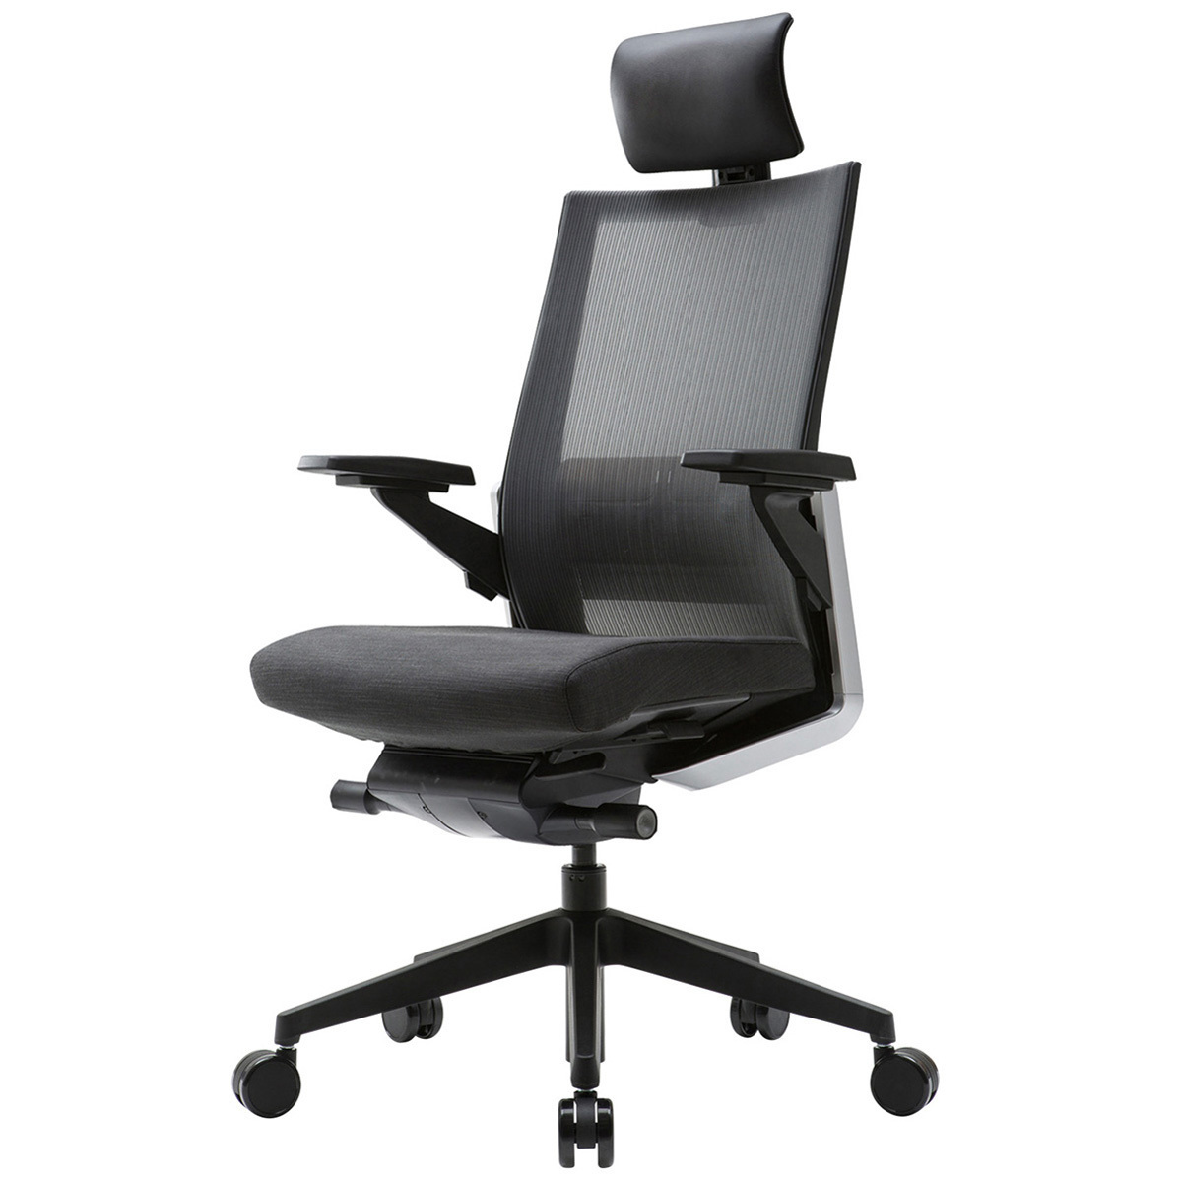 시디즈 매쉬 사무용 의자 T800HLDA Sidiz Mesh Office Chair, 블랙 